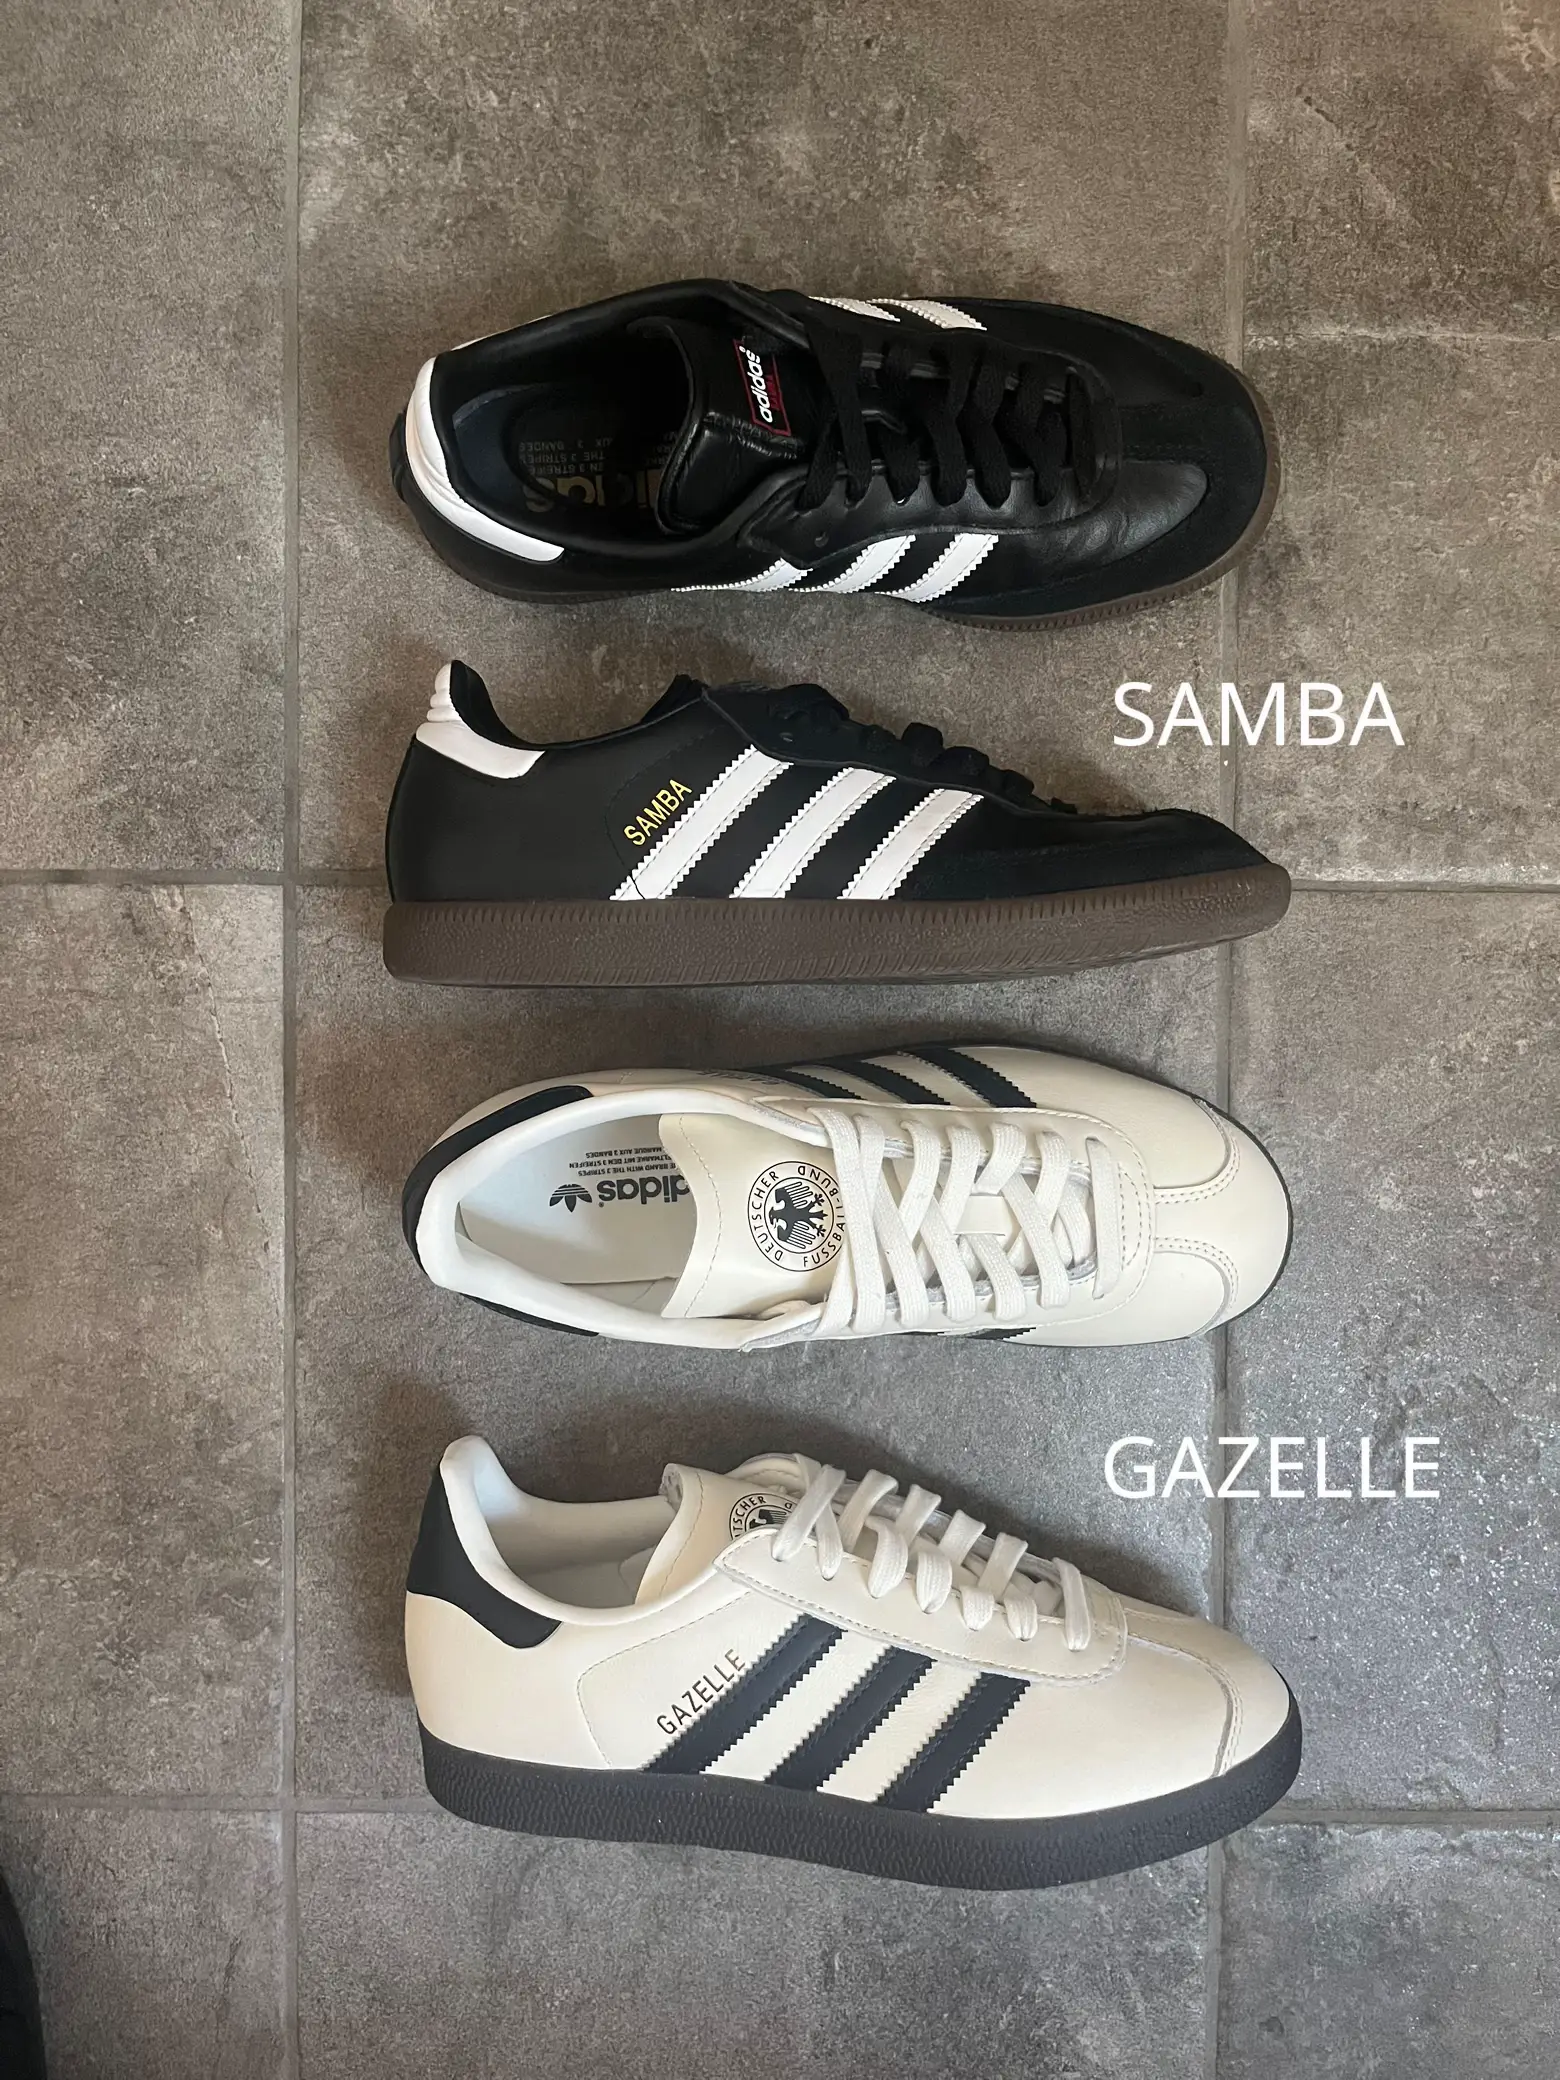 特価販売【新品】gazelle ガゼル 28.5 adidas/samba好きの方にも 靴